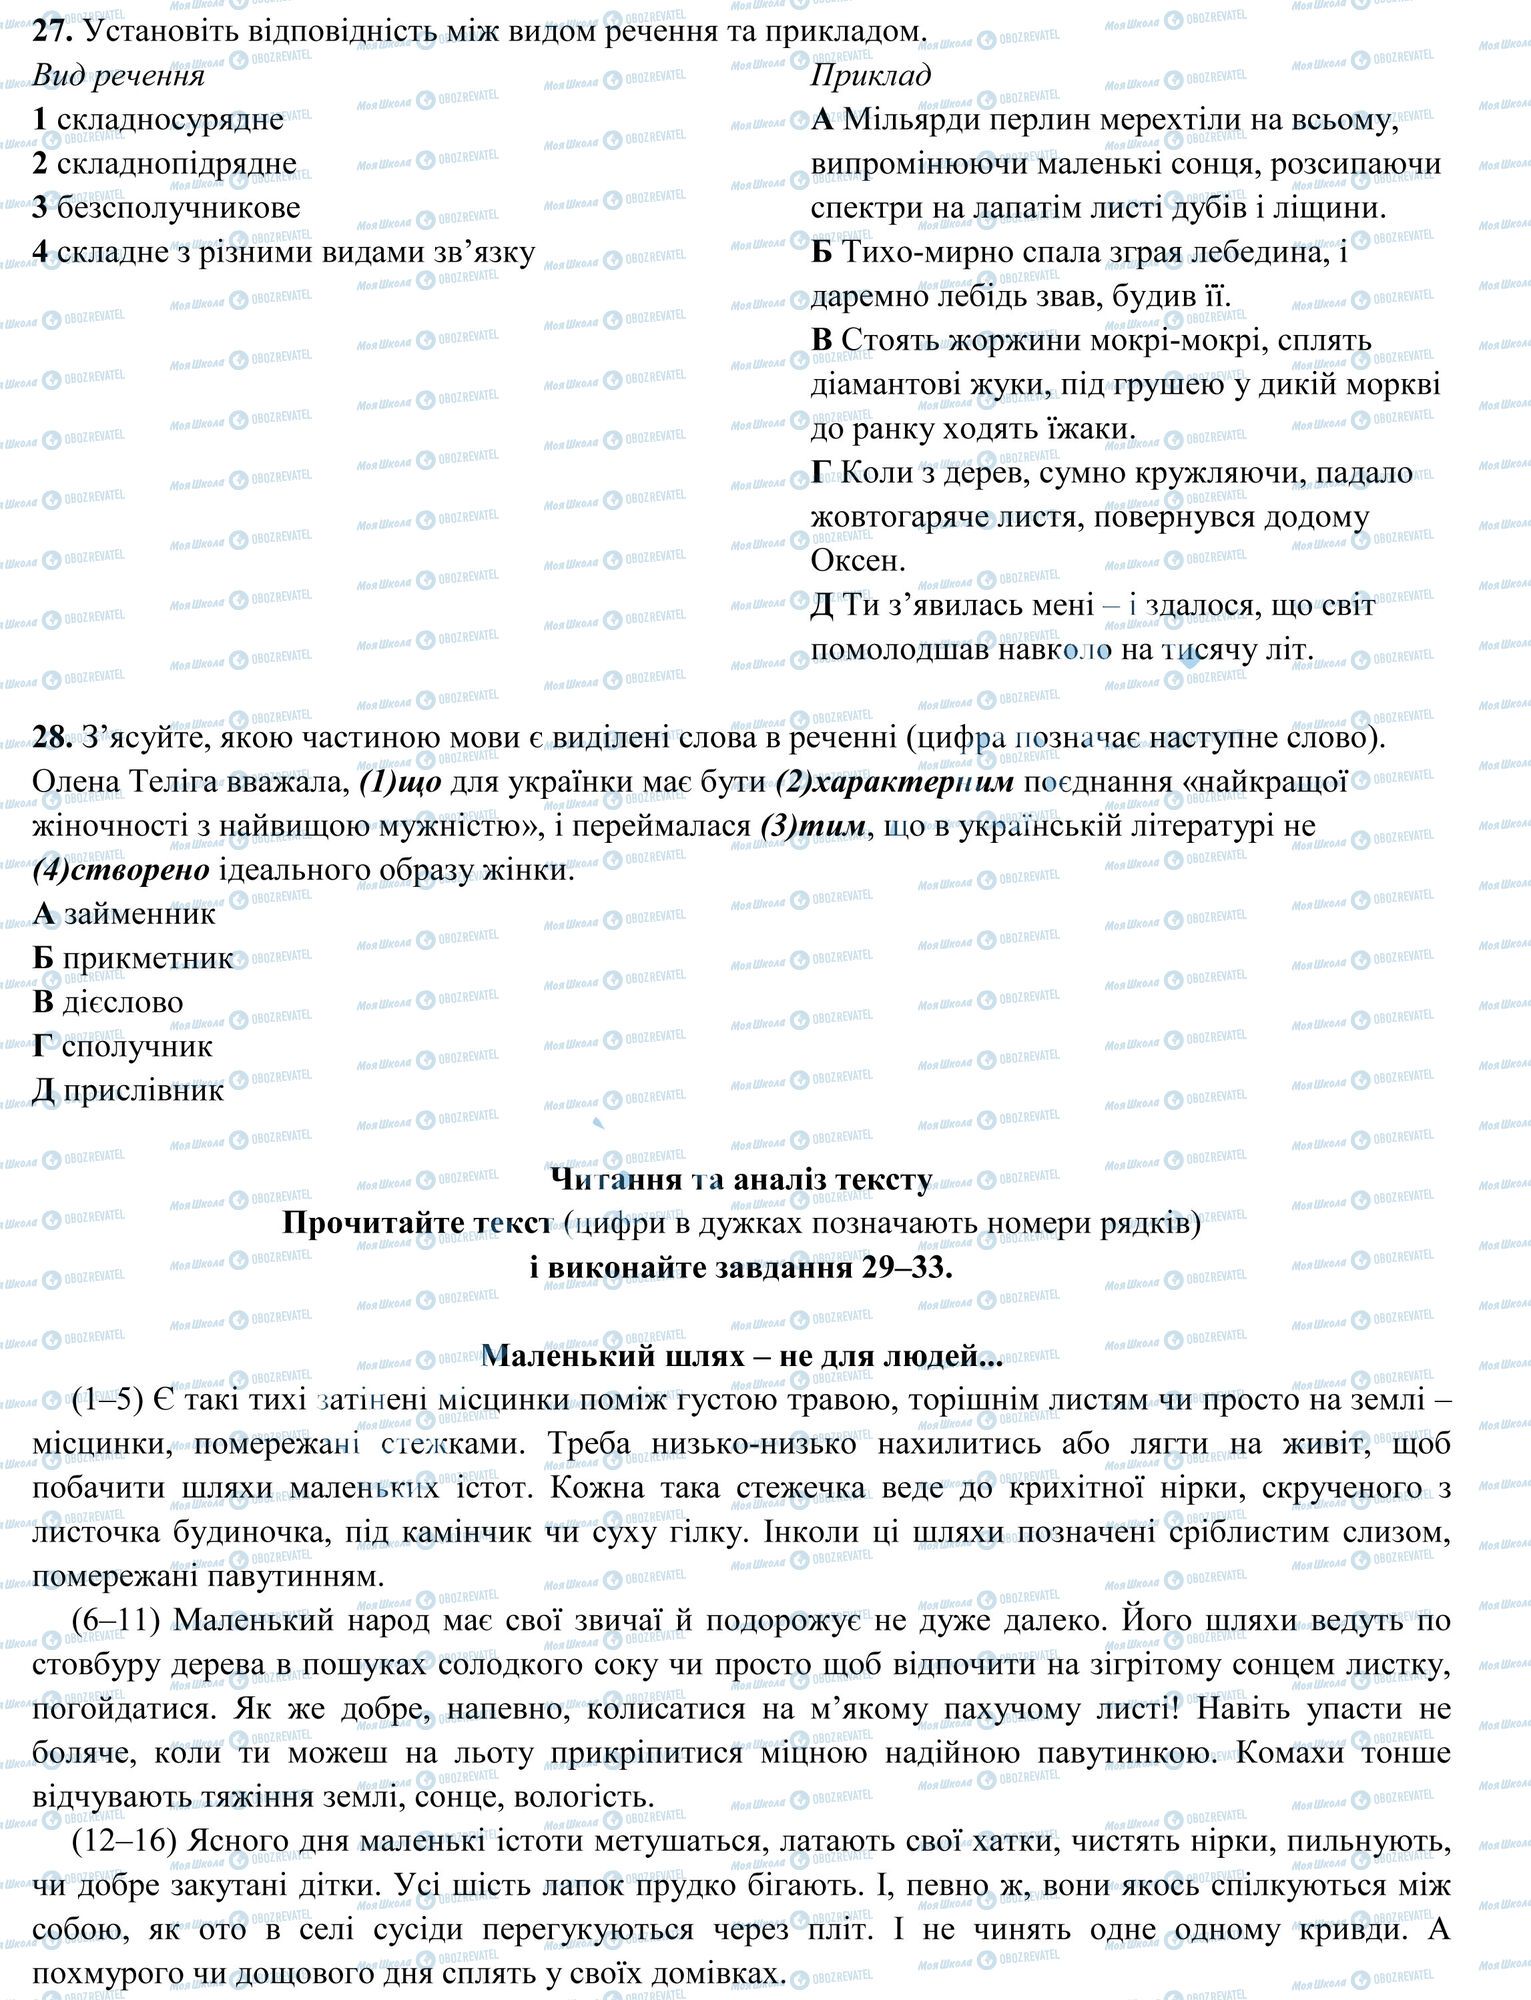 ЗНО Укр мова 11 класс страница 6